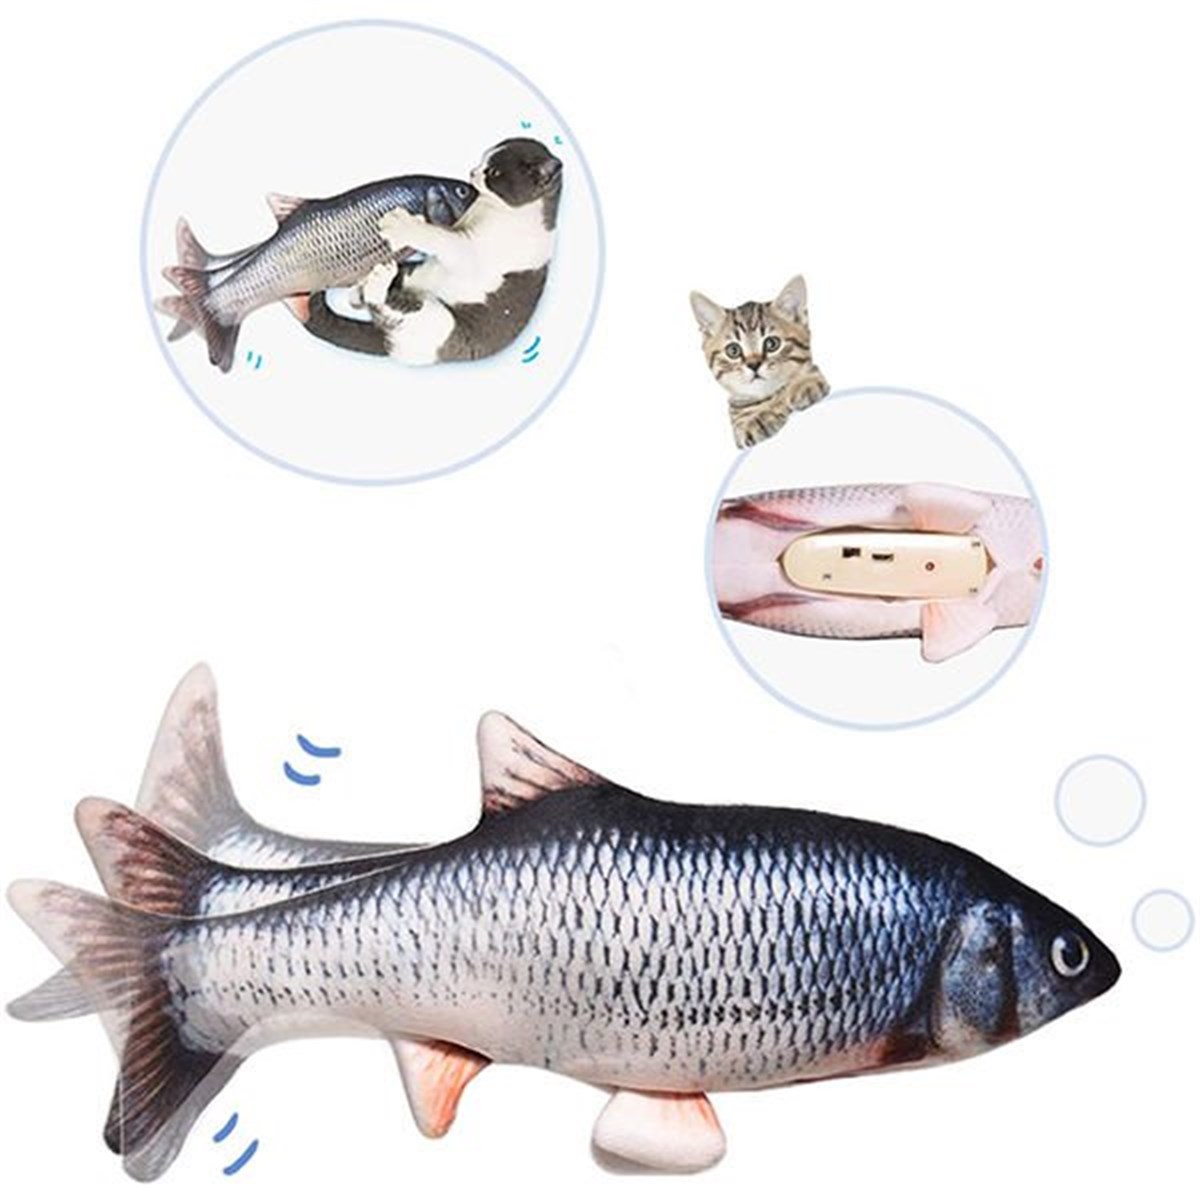 Petzz Catnipli Şarjlı ve Hareketli Balık Kedi Oyuncağı, Alışverişin  Adresi'nde | Shopiglo